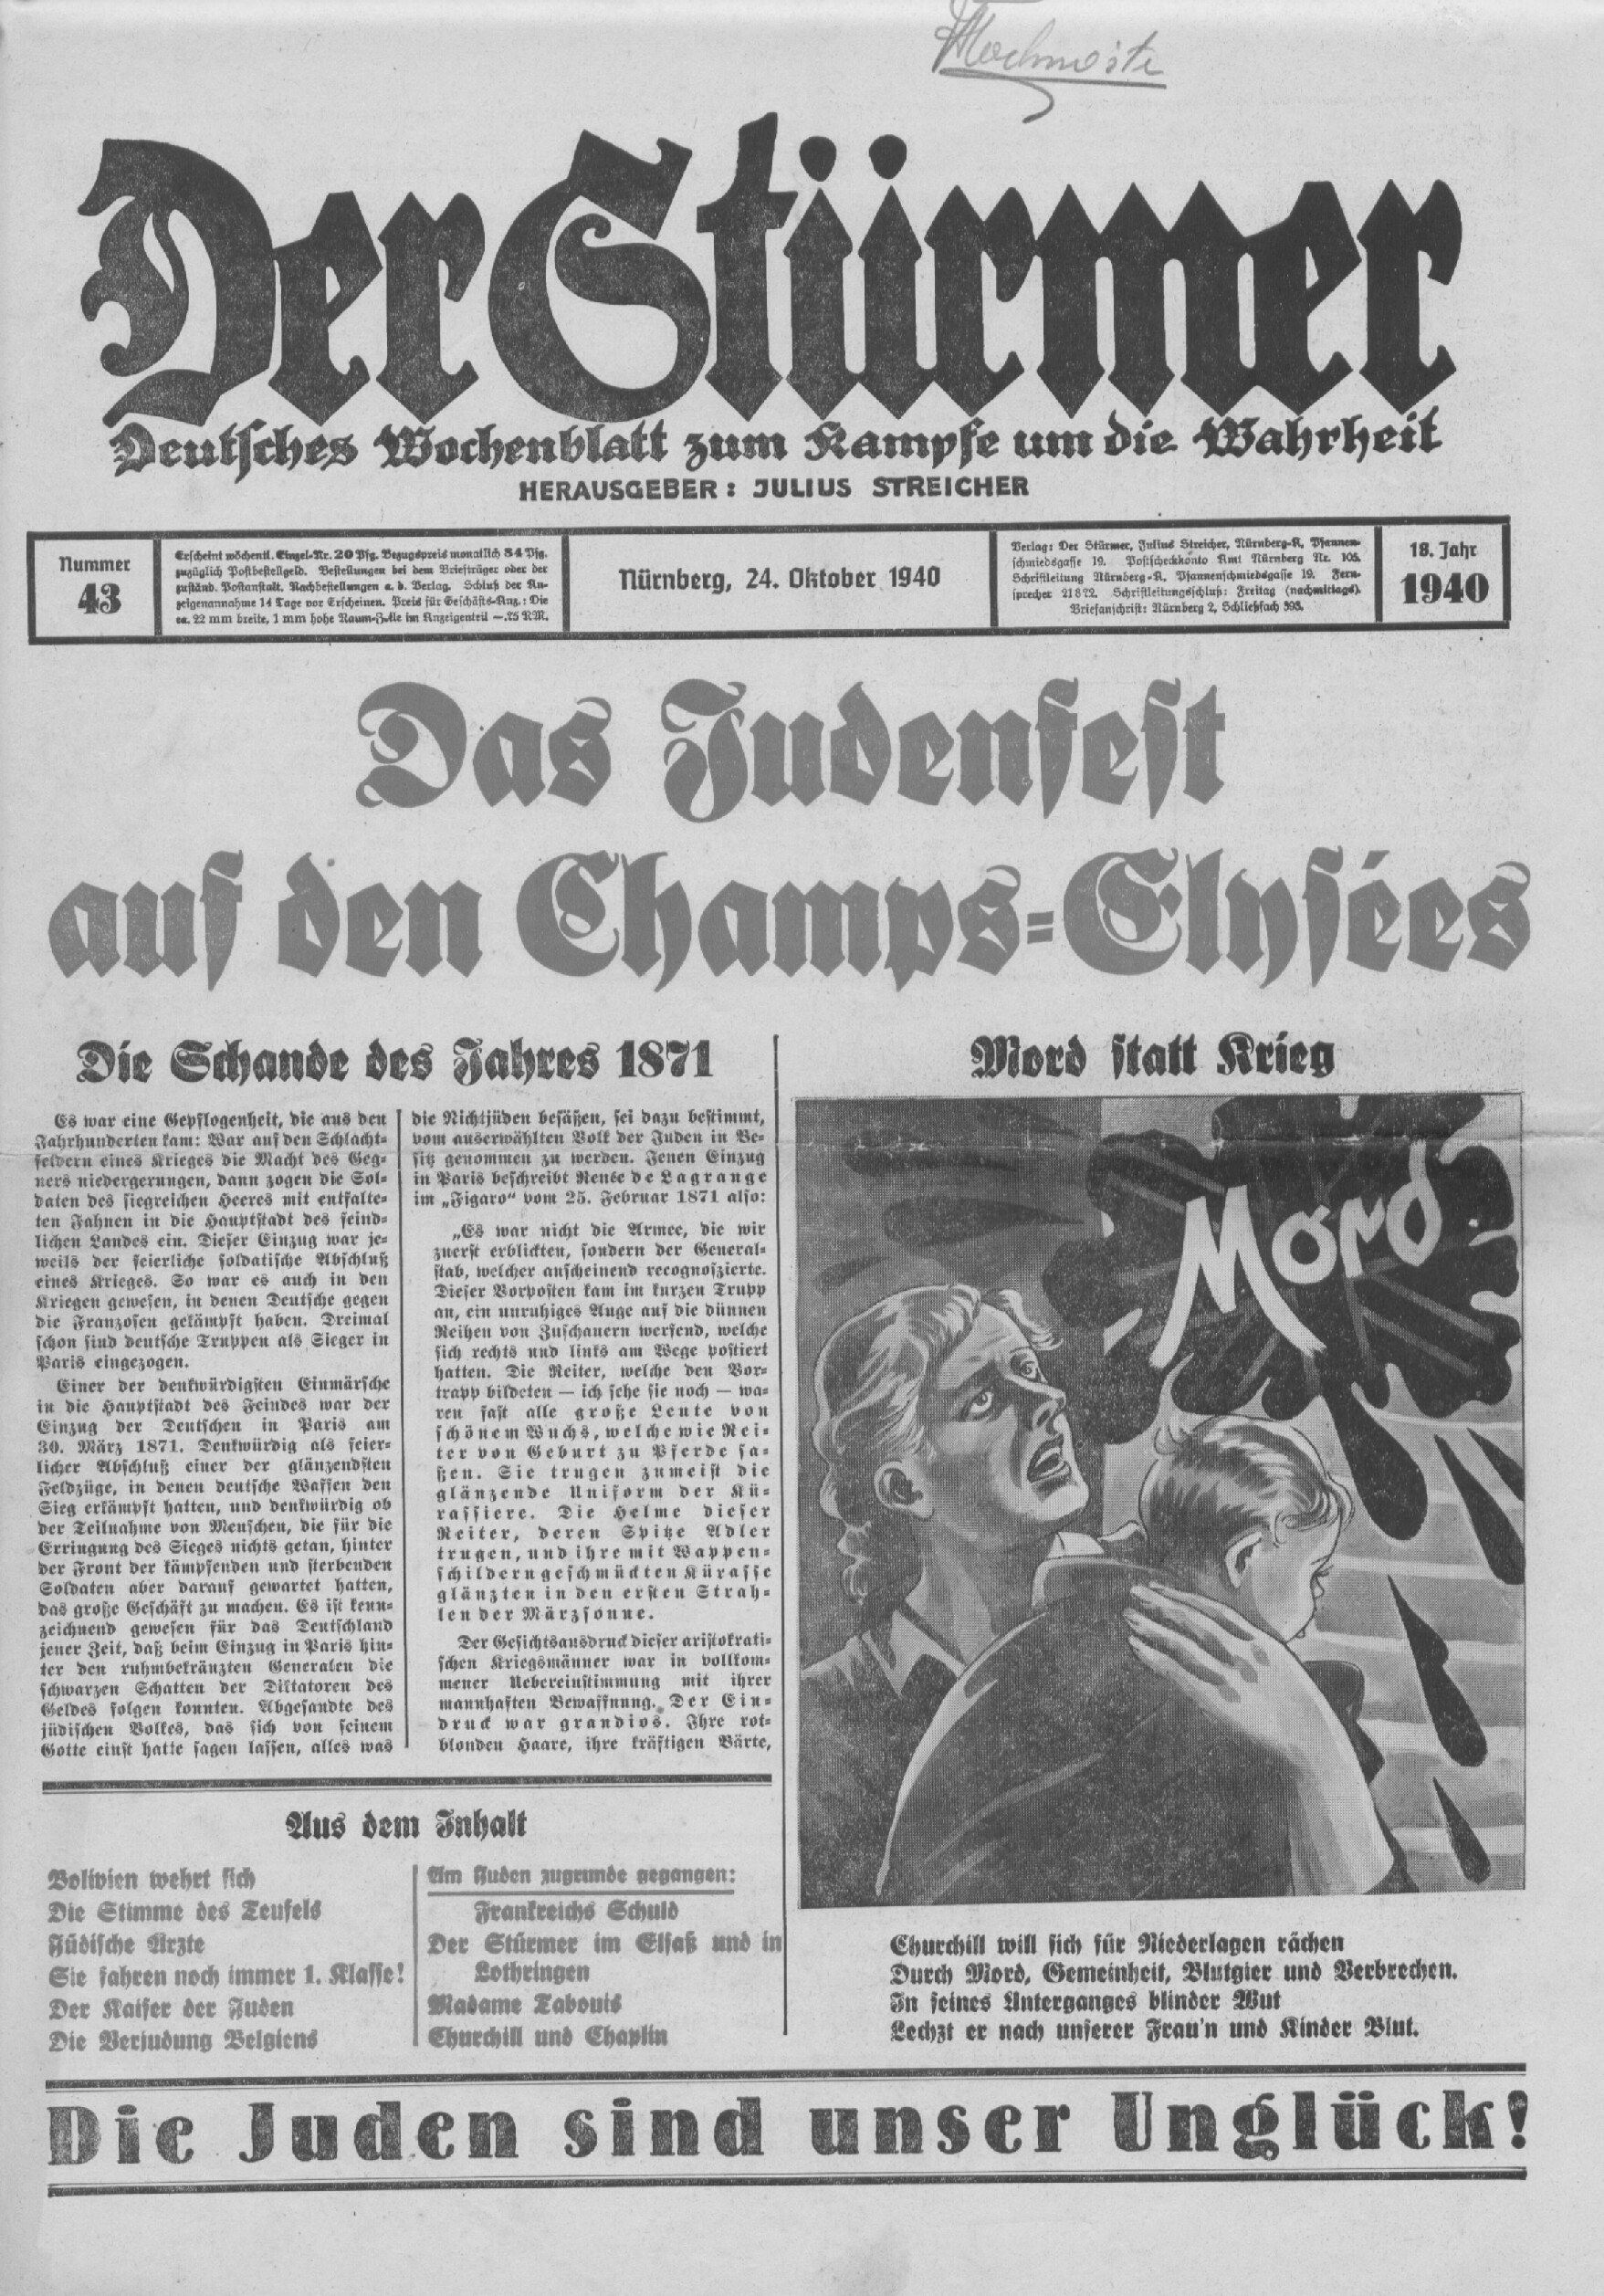 Der Stürmer - 1940 Nr. 43 - Das Judenfest auf den Champs-Élysées